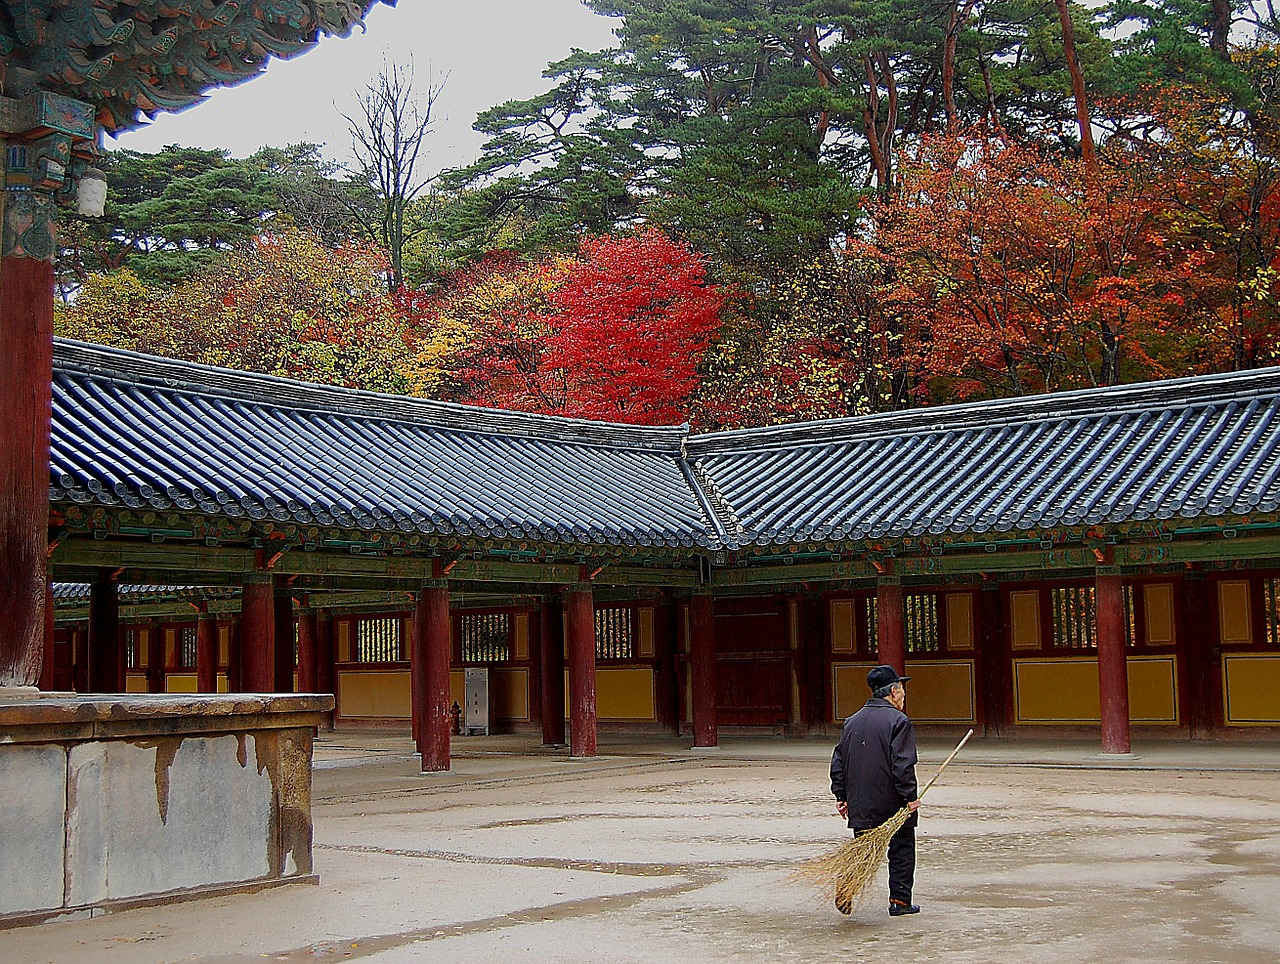 south korea temple religion free photo